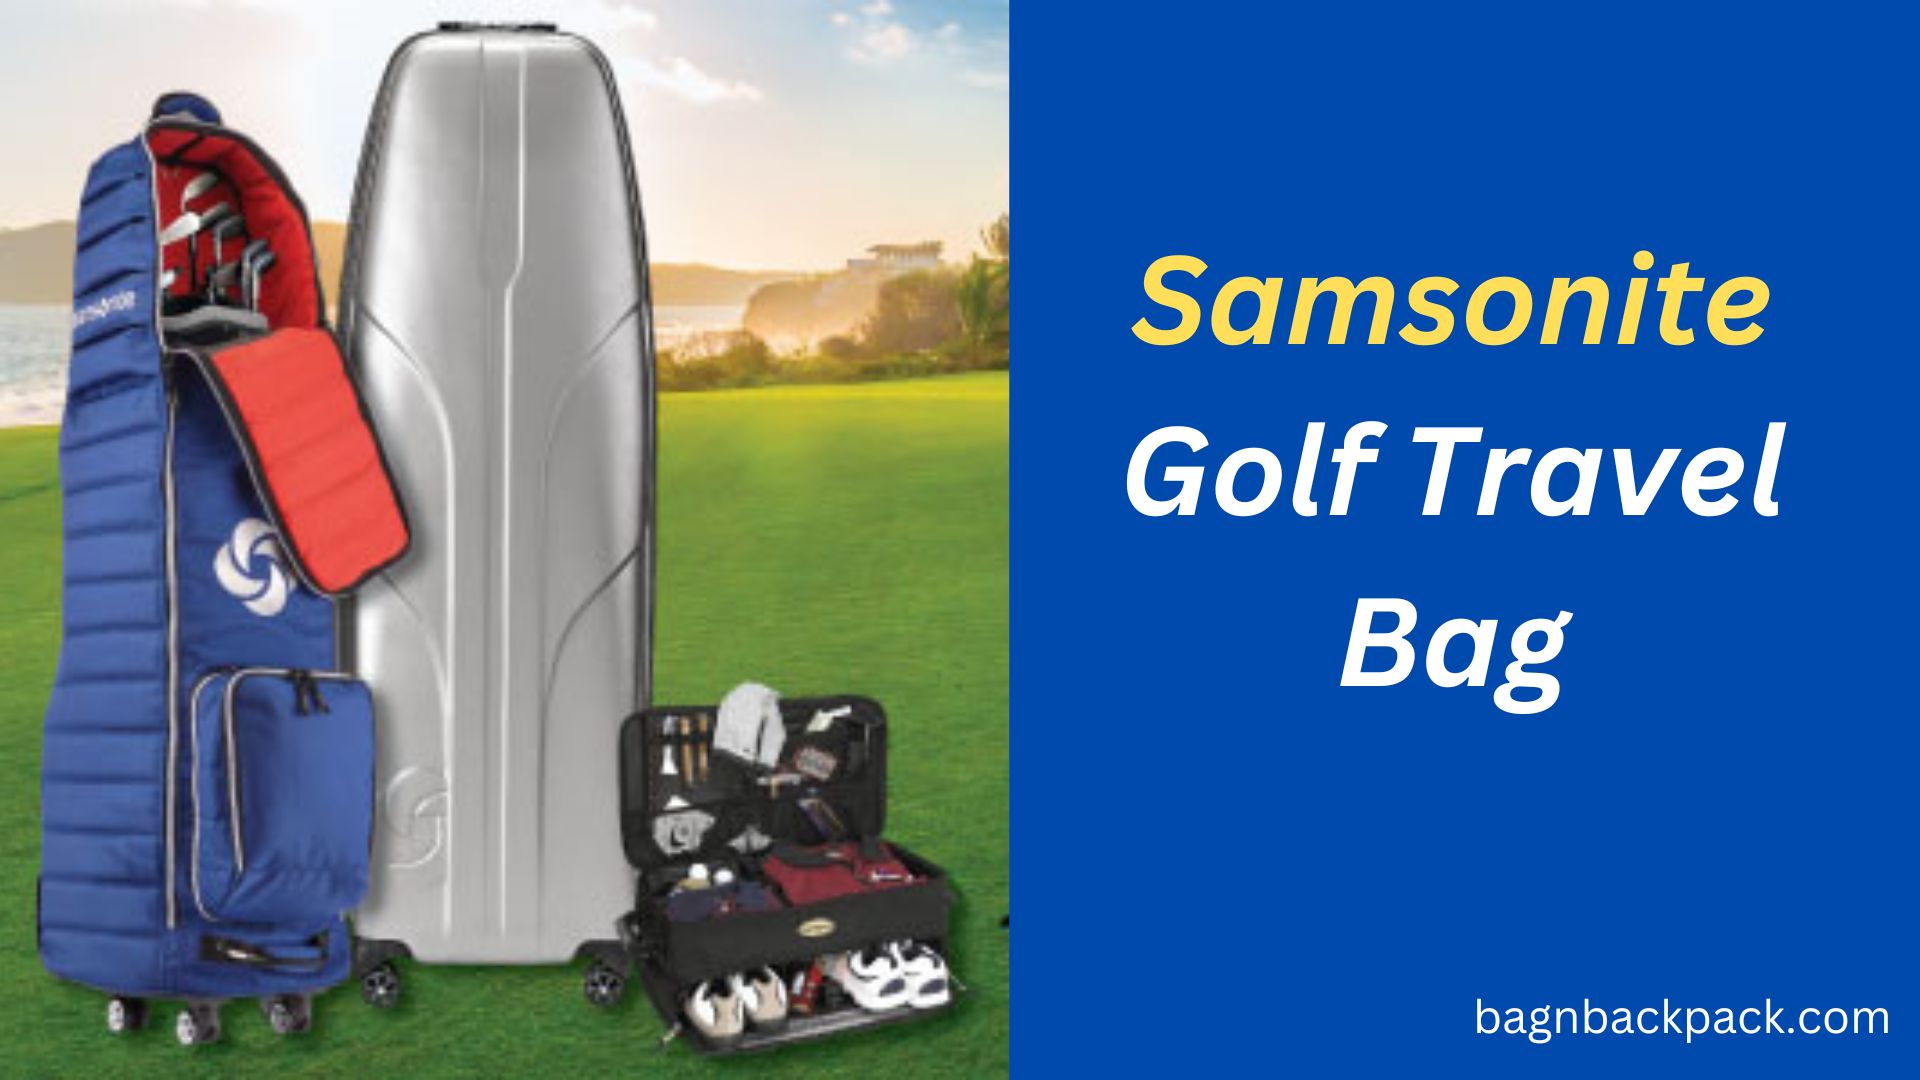 Samsonite Golf Travel Bag